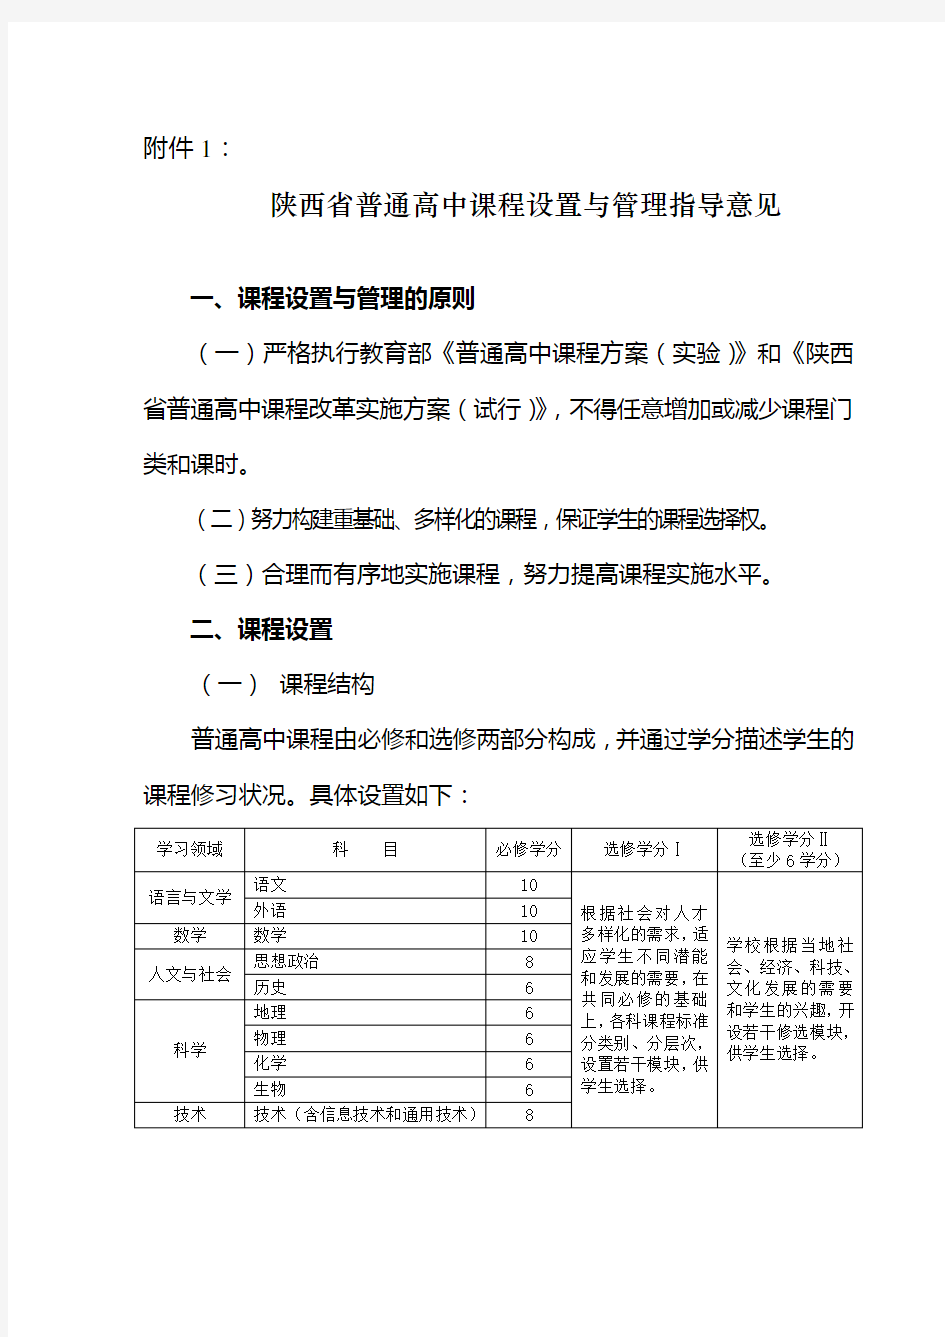 陕西省普通高中课程设置与管理指导意见